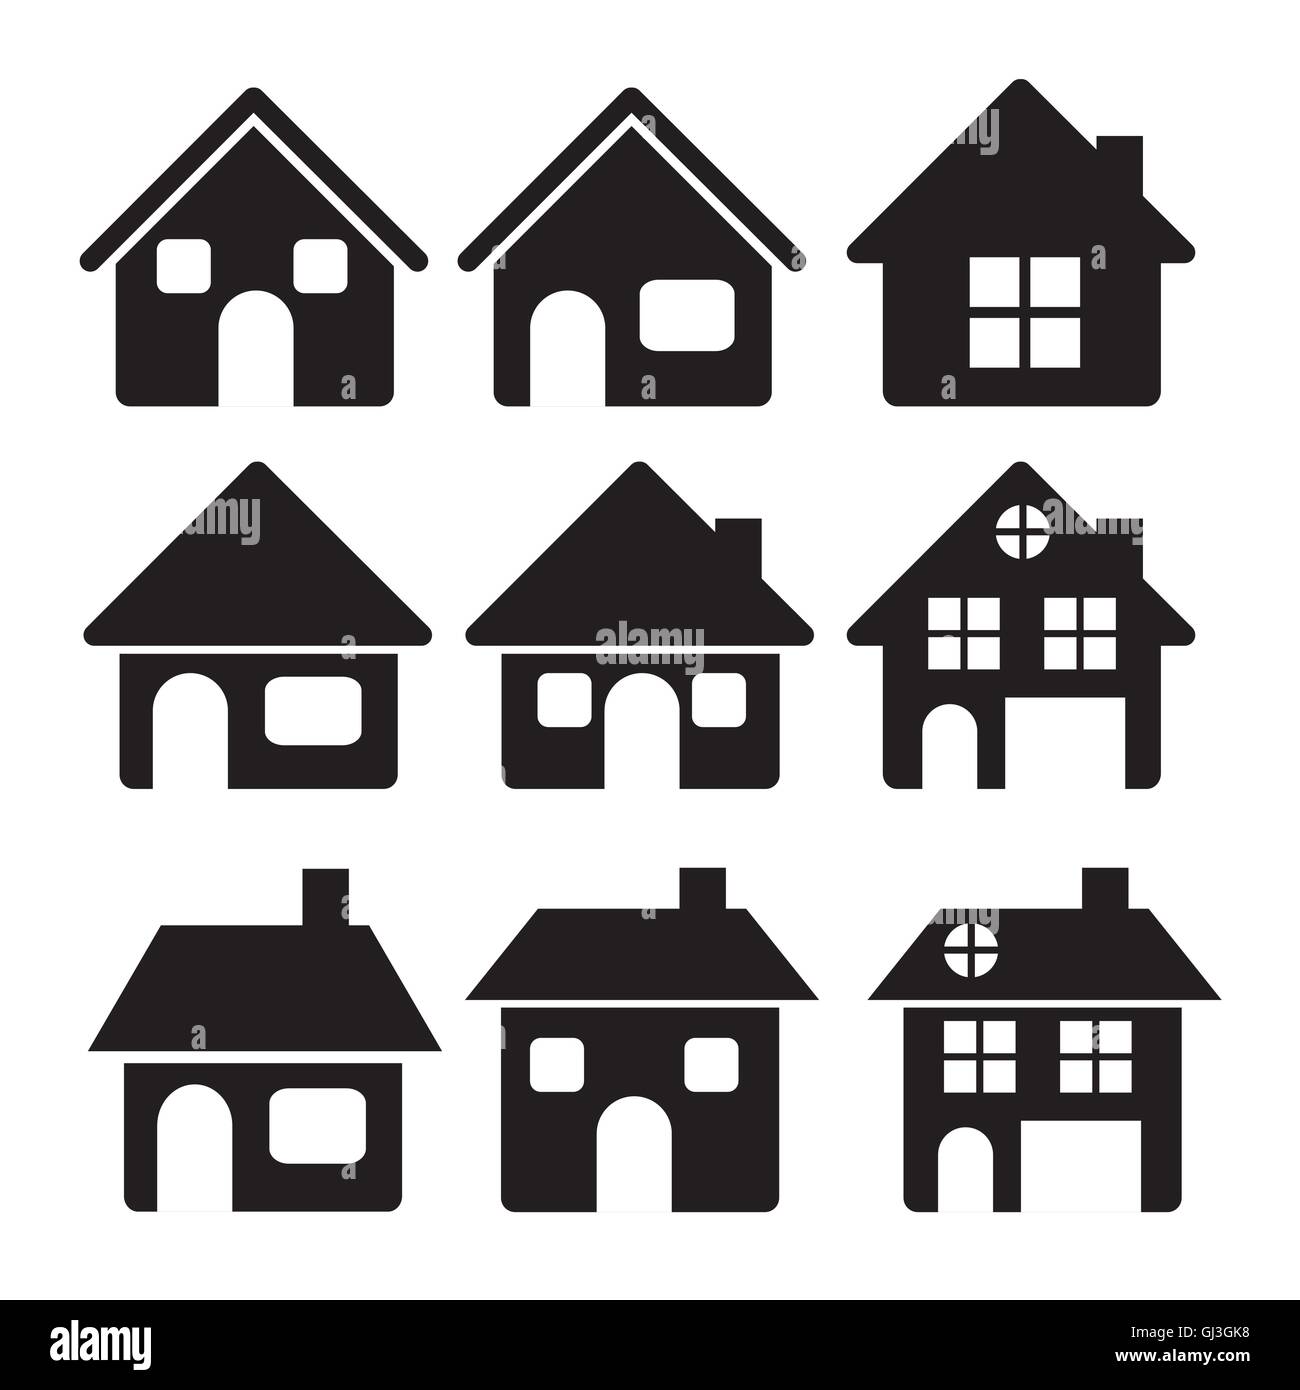 Illustrazione delle icone home casa sagome su sfondo bianco Illustrazione Vettoriale